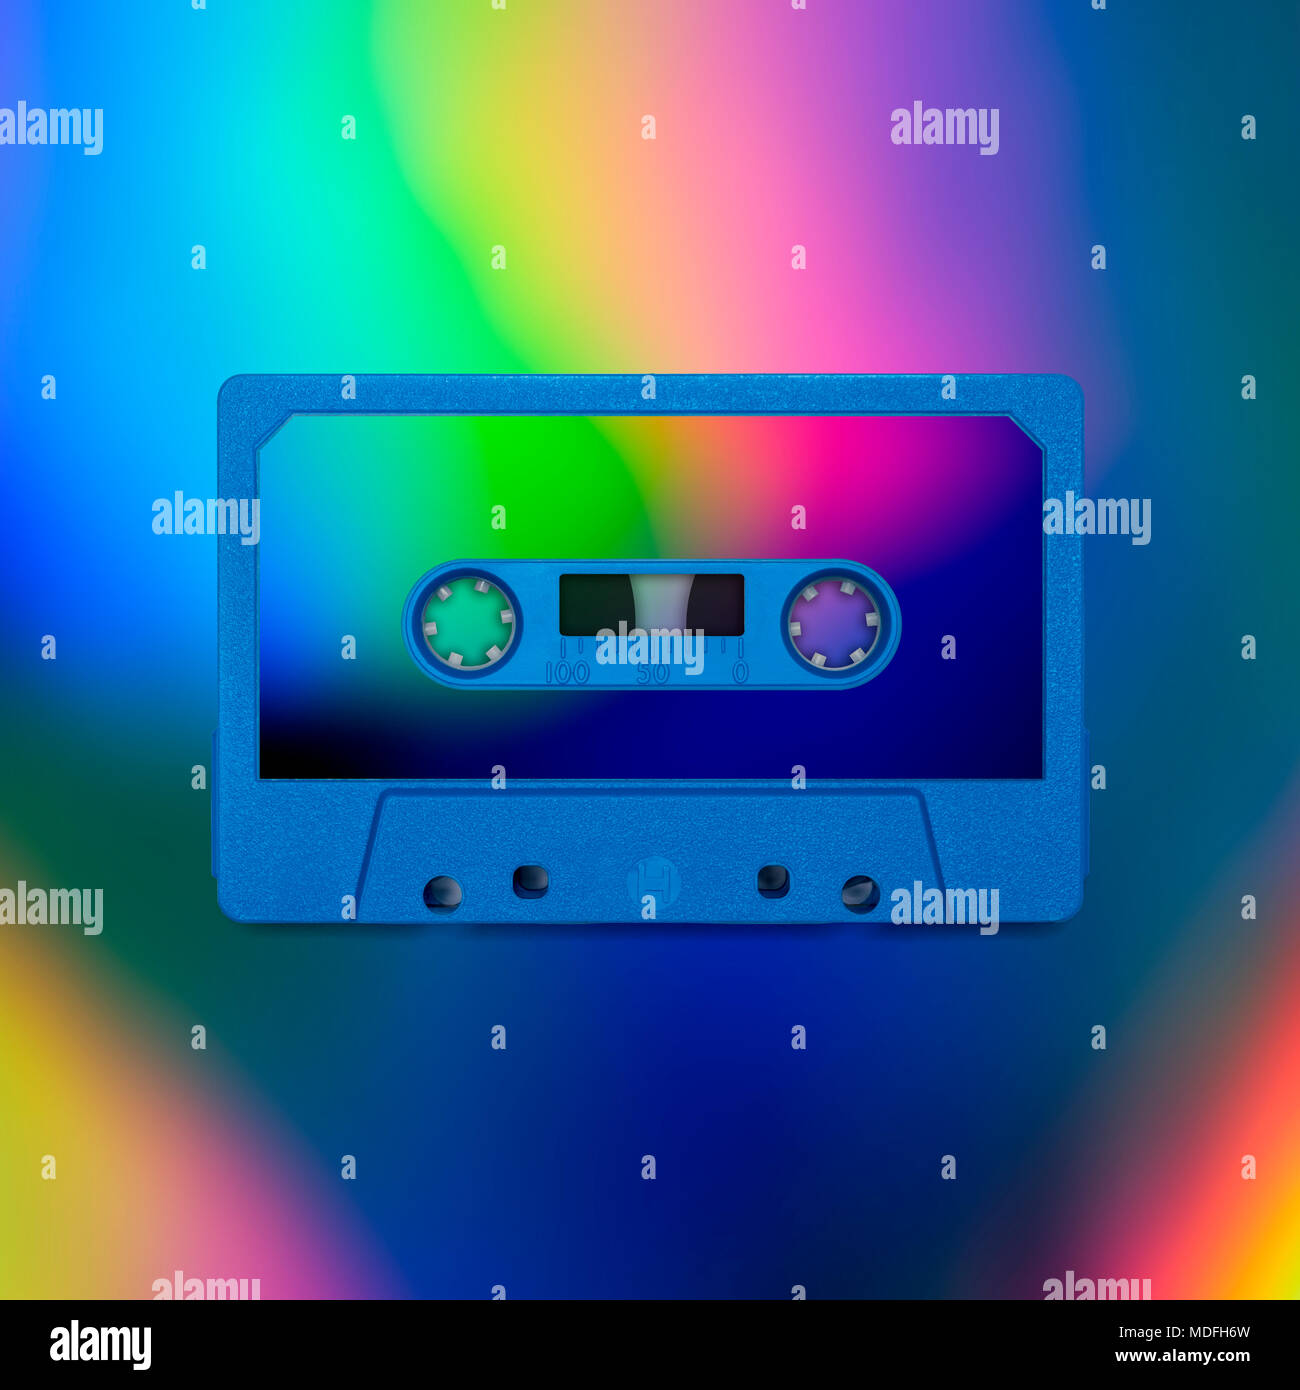 Cinta de cassette nostalgia, aislada y presentados en intensos colores holográfico iridiscentes, cubierta para el diseño creativo, póster, libro, impresión, tarjeta de regalo Foto de stock